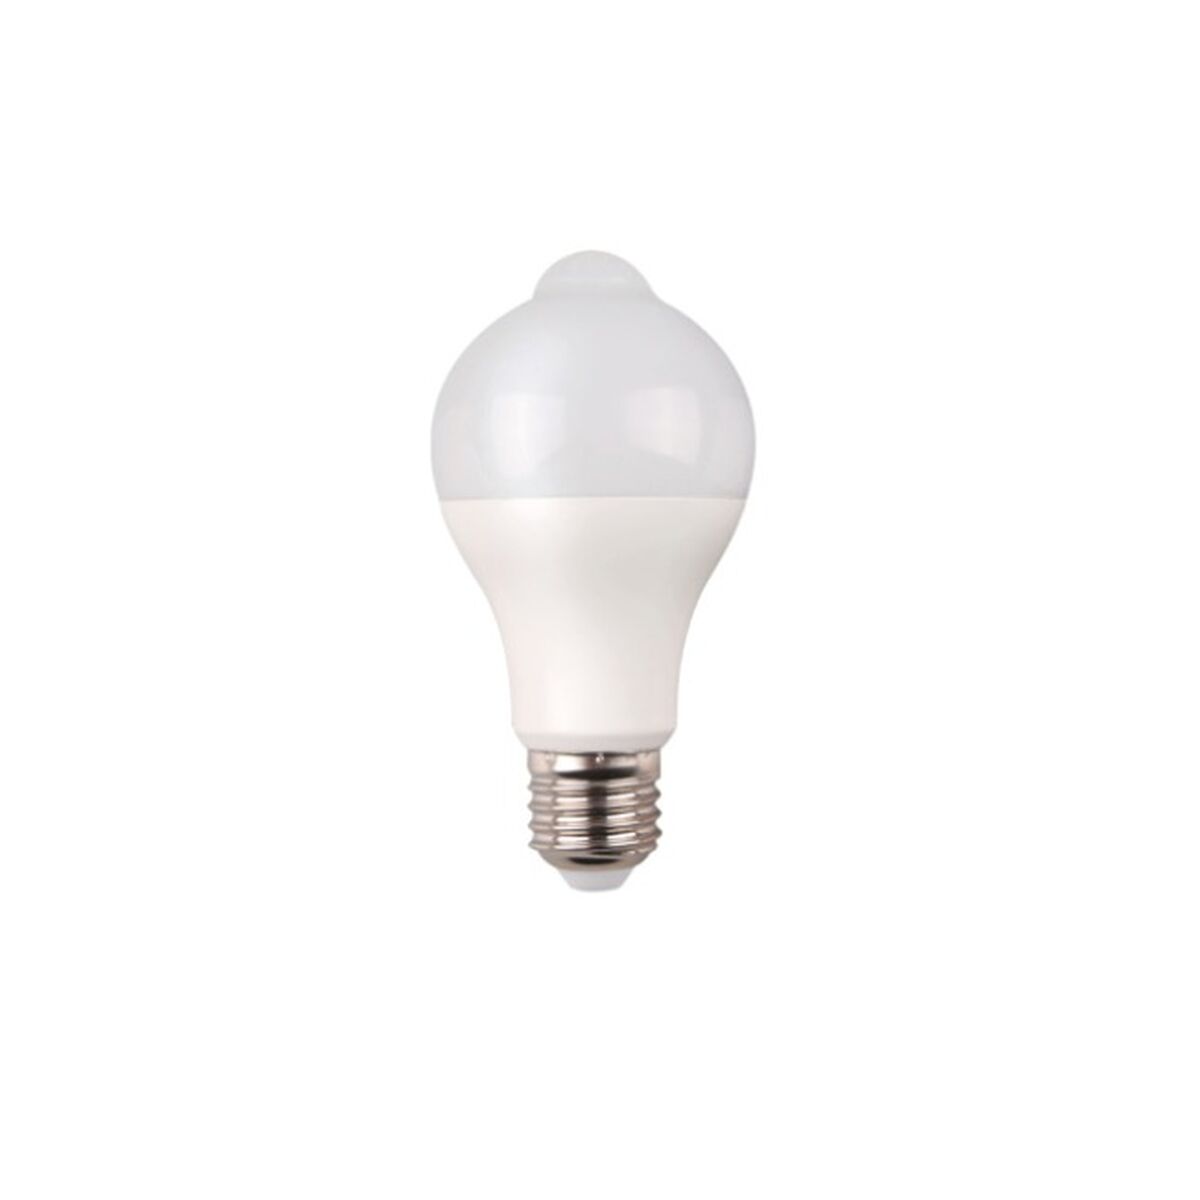 Billede af LED-lampe EDM F 12 W E27 1055 lm 6 x 11 cm (6400 K)